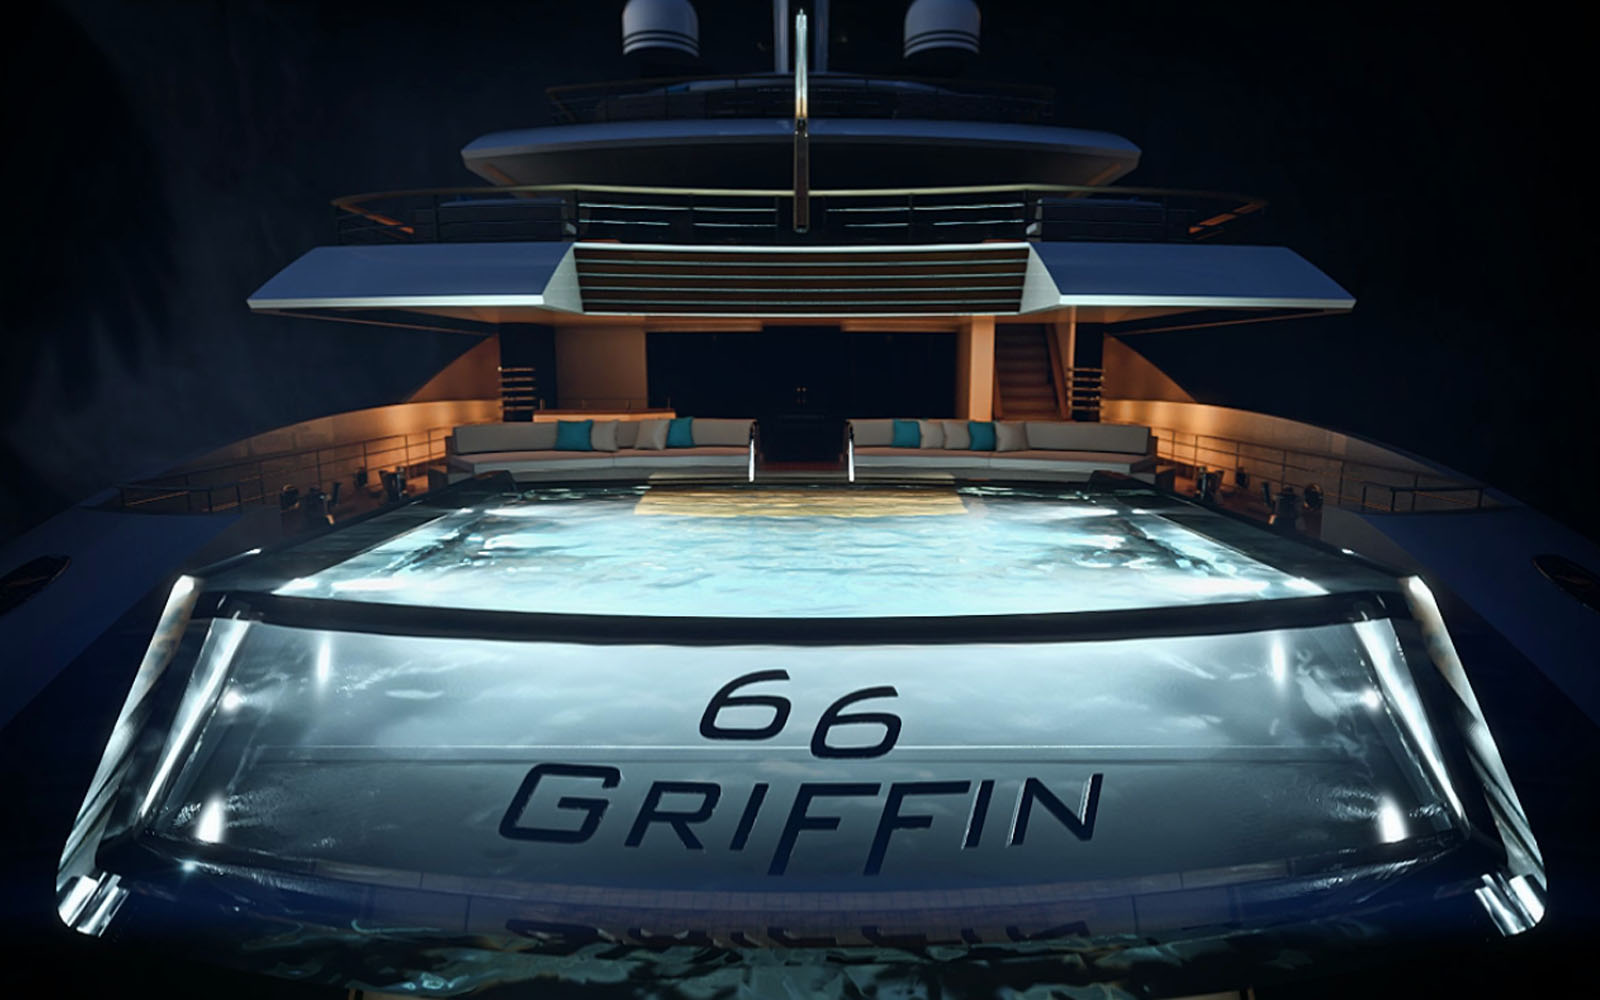 Fincantieri revela iate conceito Griffin, de 66 metros-boatshopping